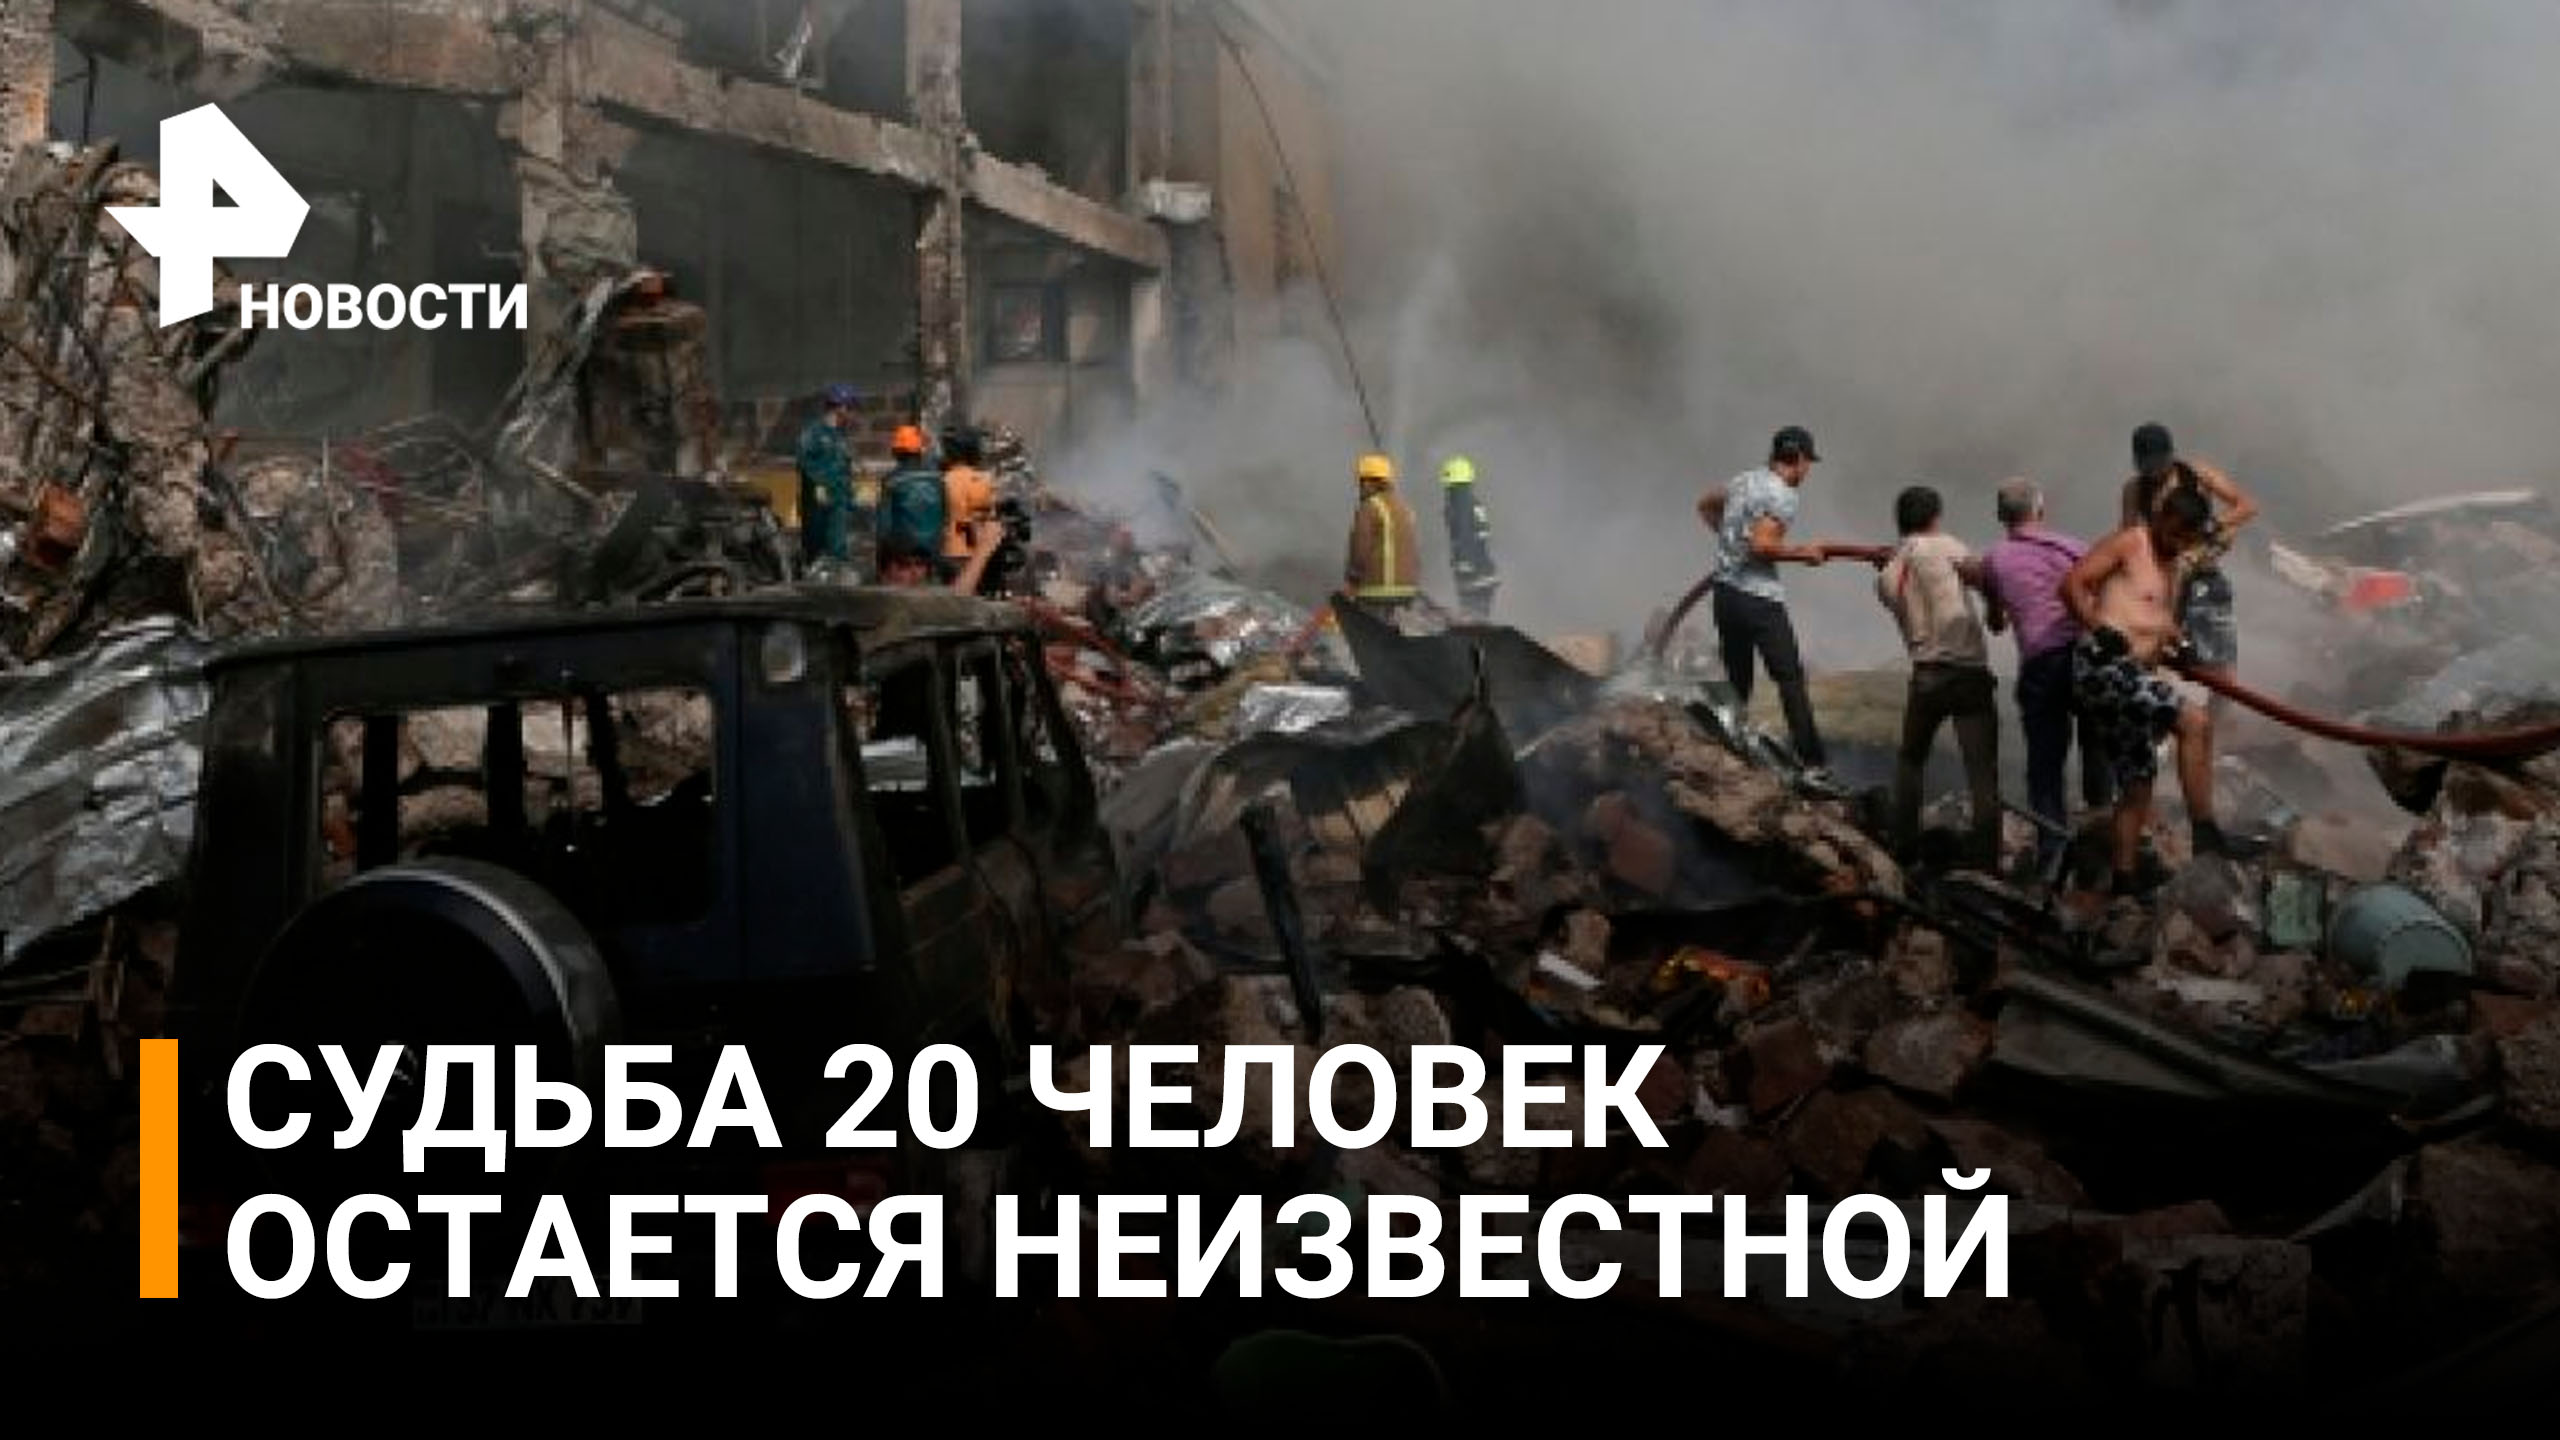 Больше 10 пожарных расчетов тушат пламя в ереванском ТЦ / РЕН Новости